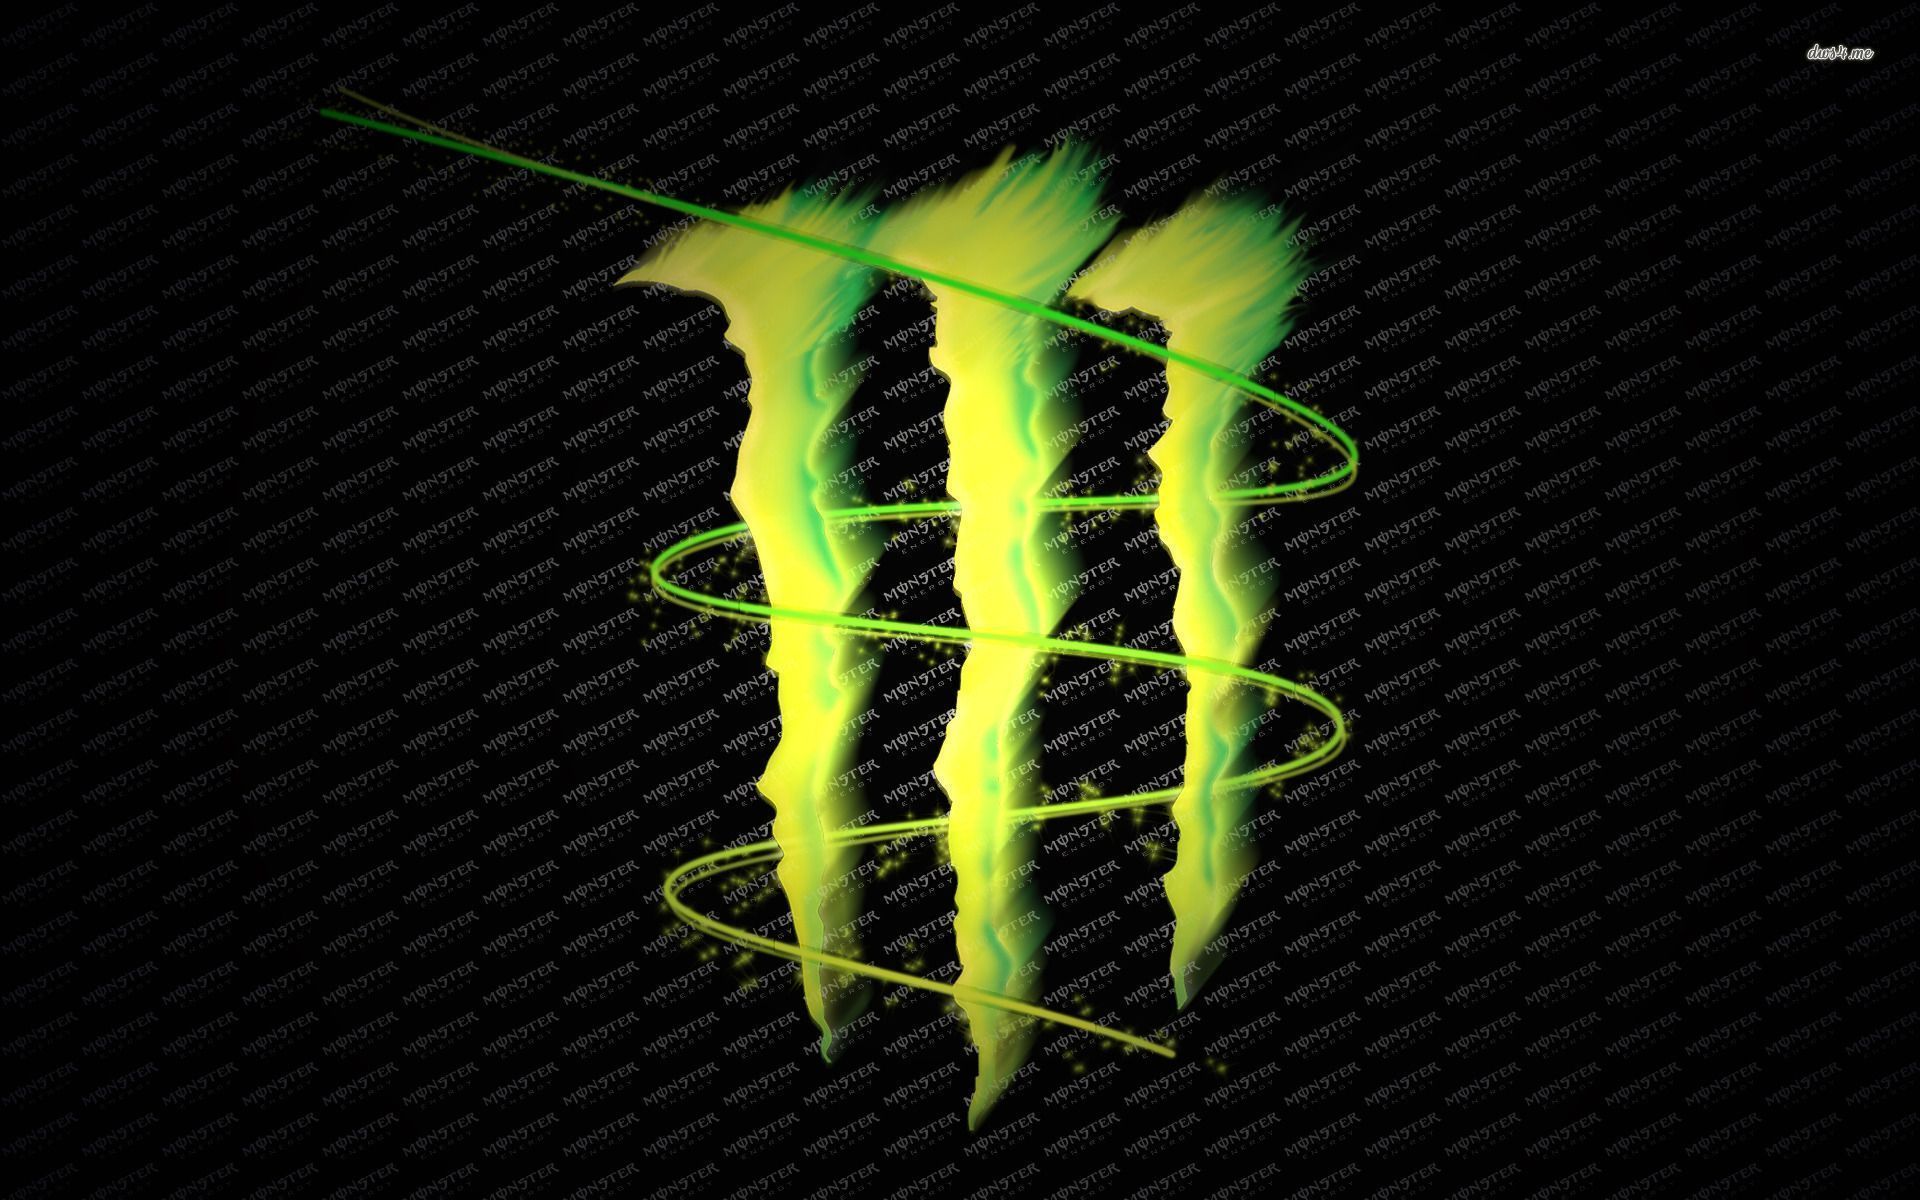 Monster Energy logo wallpaper - Digital Art wallpapers - #20030